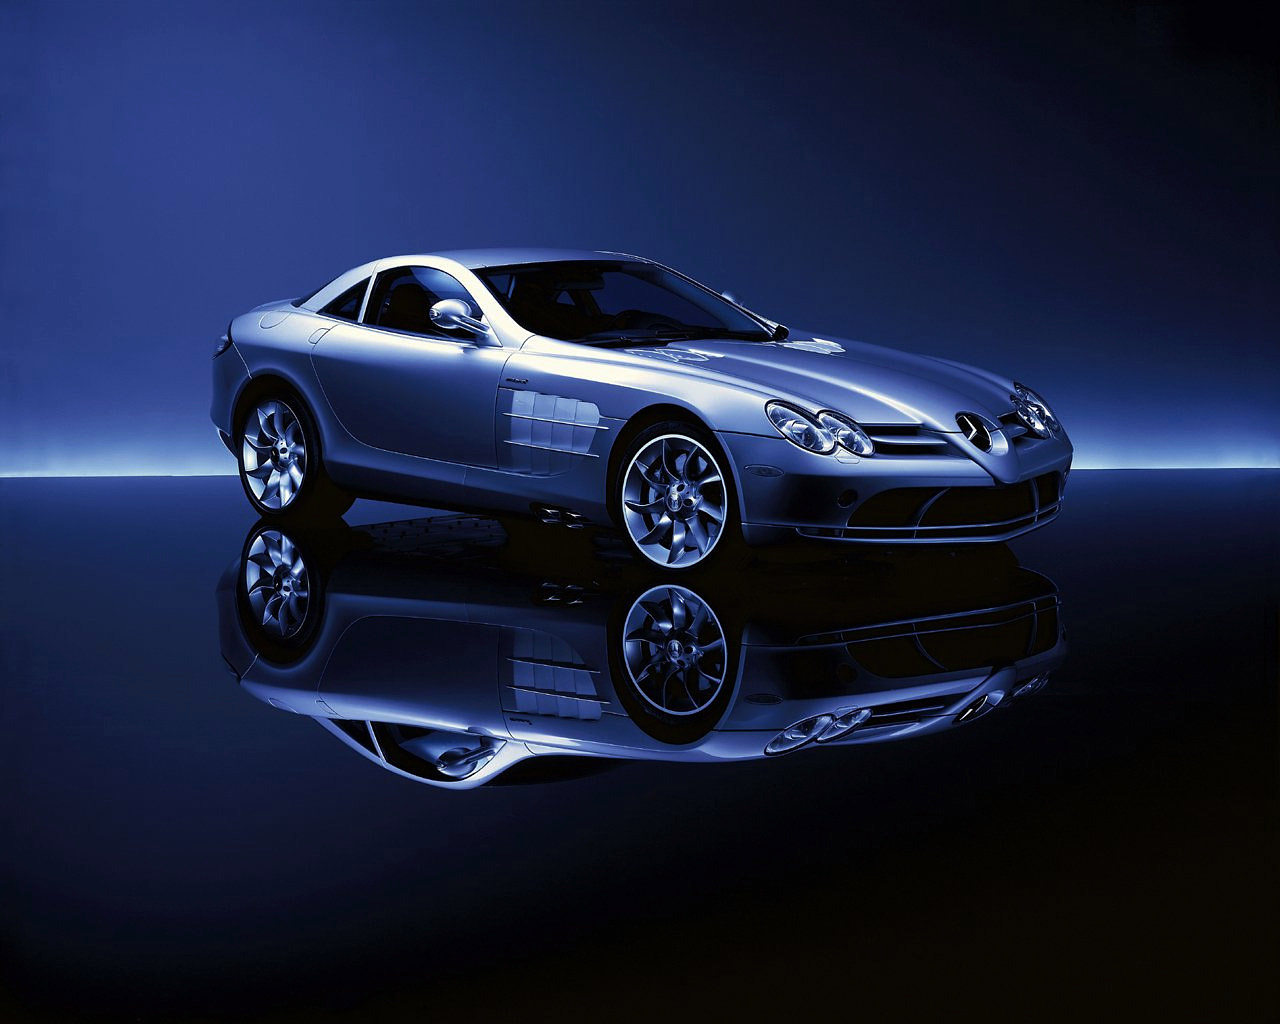 http://2.bp.blogspot.com/_7ub7OOBg4Xc/TTRfjuY-yfI/AAAAAAAAAZs/G_8X1lba60g/s1600/Mercedes+Benz+SLR+McLaren+Auto+Desktop.jpg